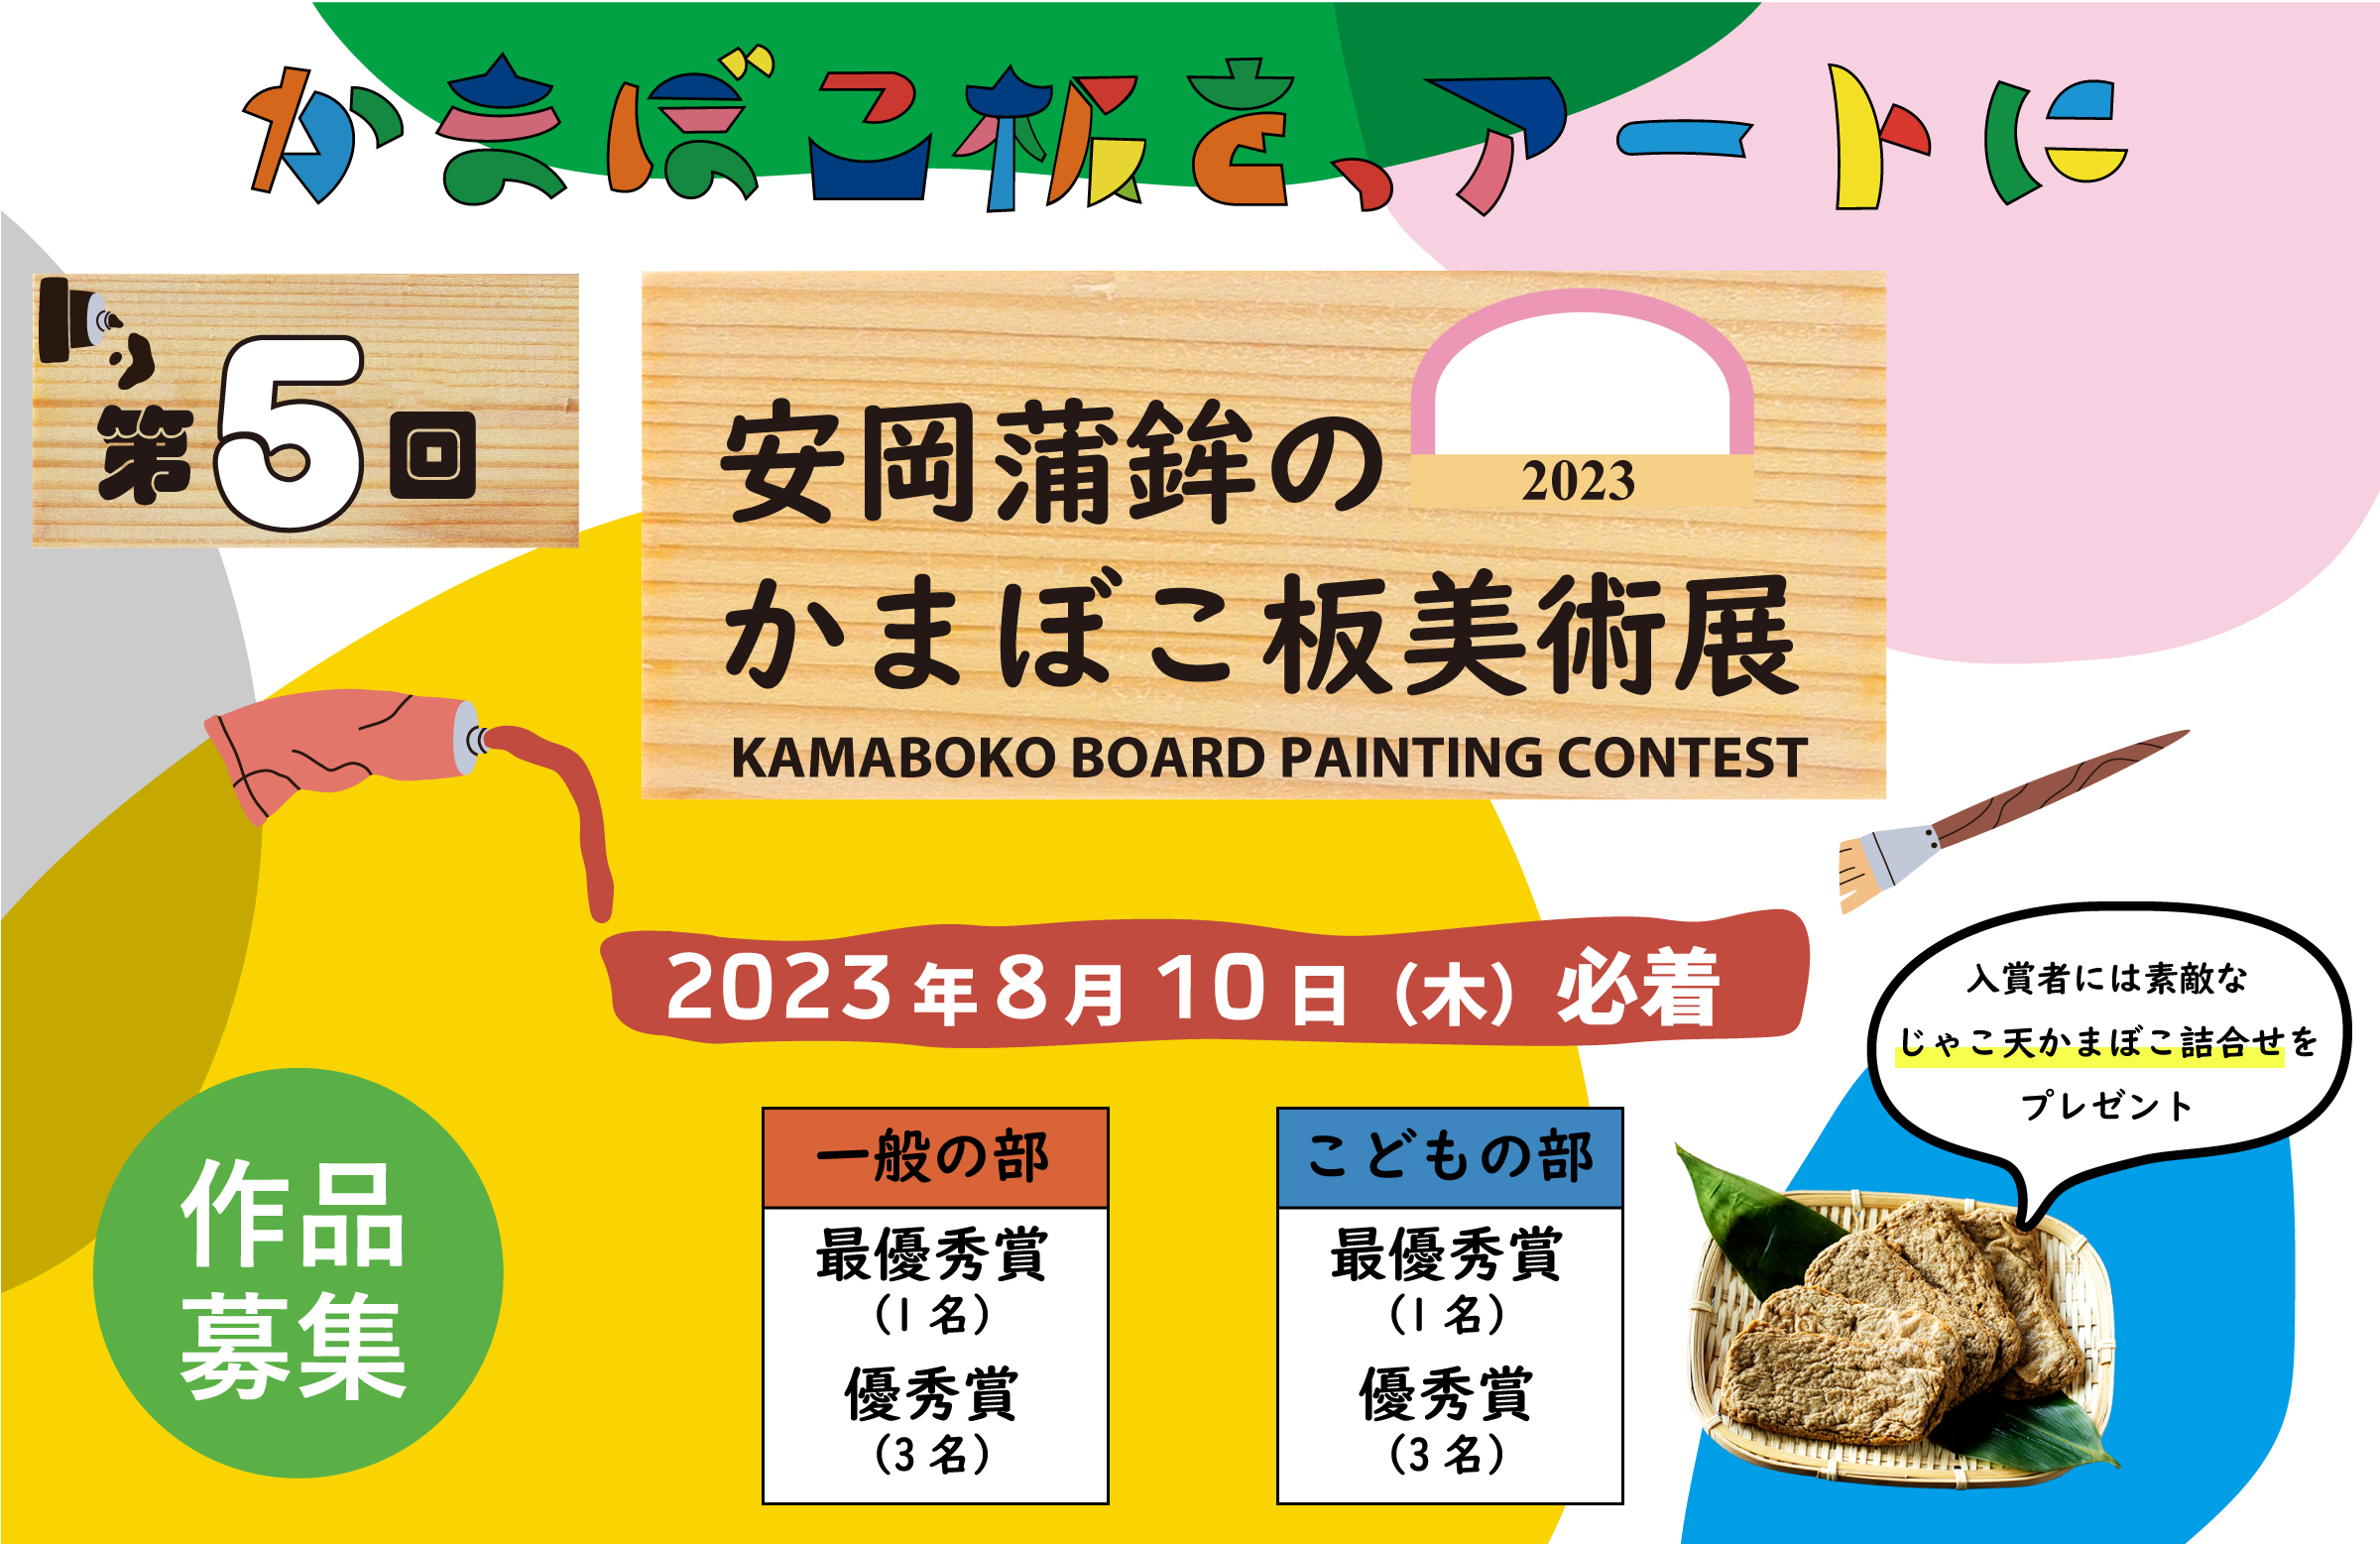 第5回「安岡蒲鉾のかまぼこ板美術展」展示に向けて
5月17日(水)に作品募集を開始